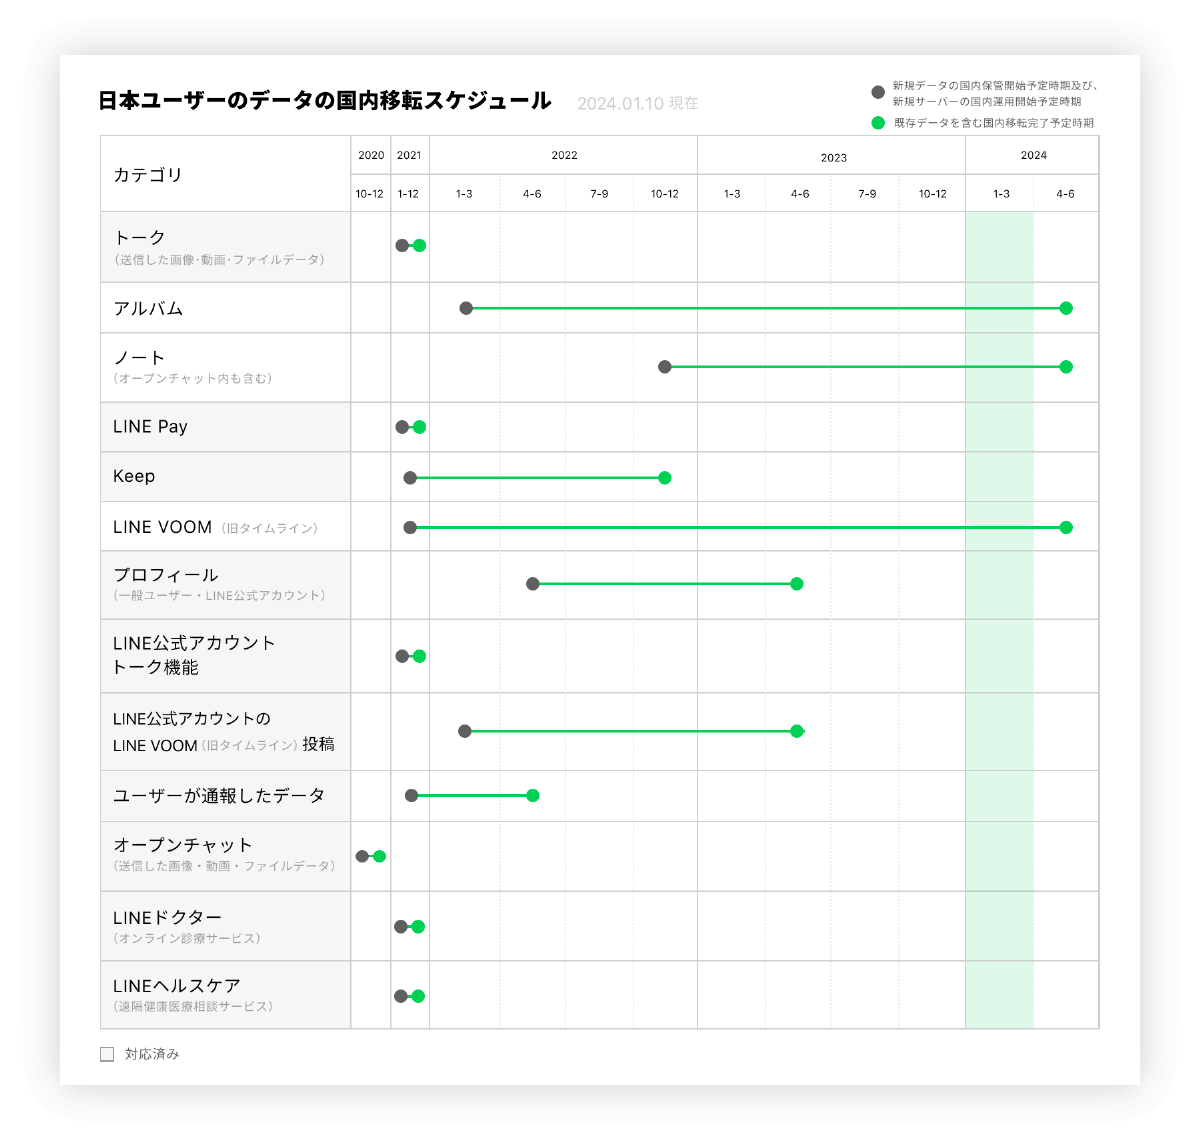 日本ユーザーのデータの国内移転スケジュール